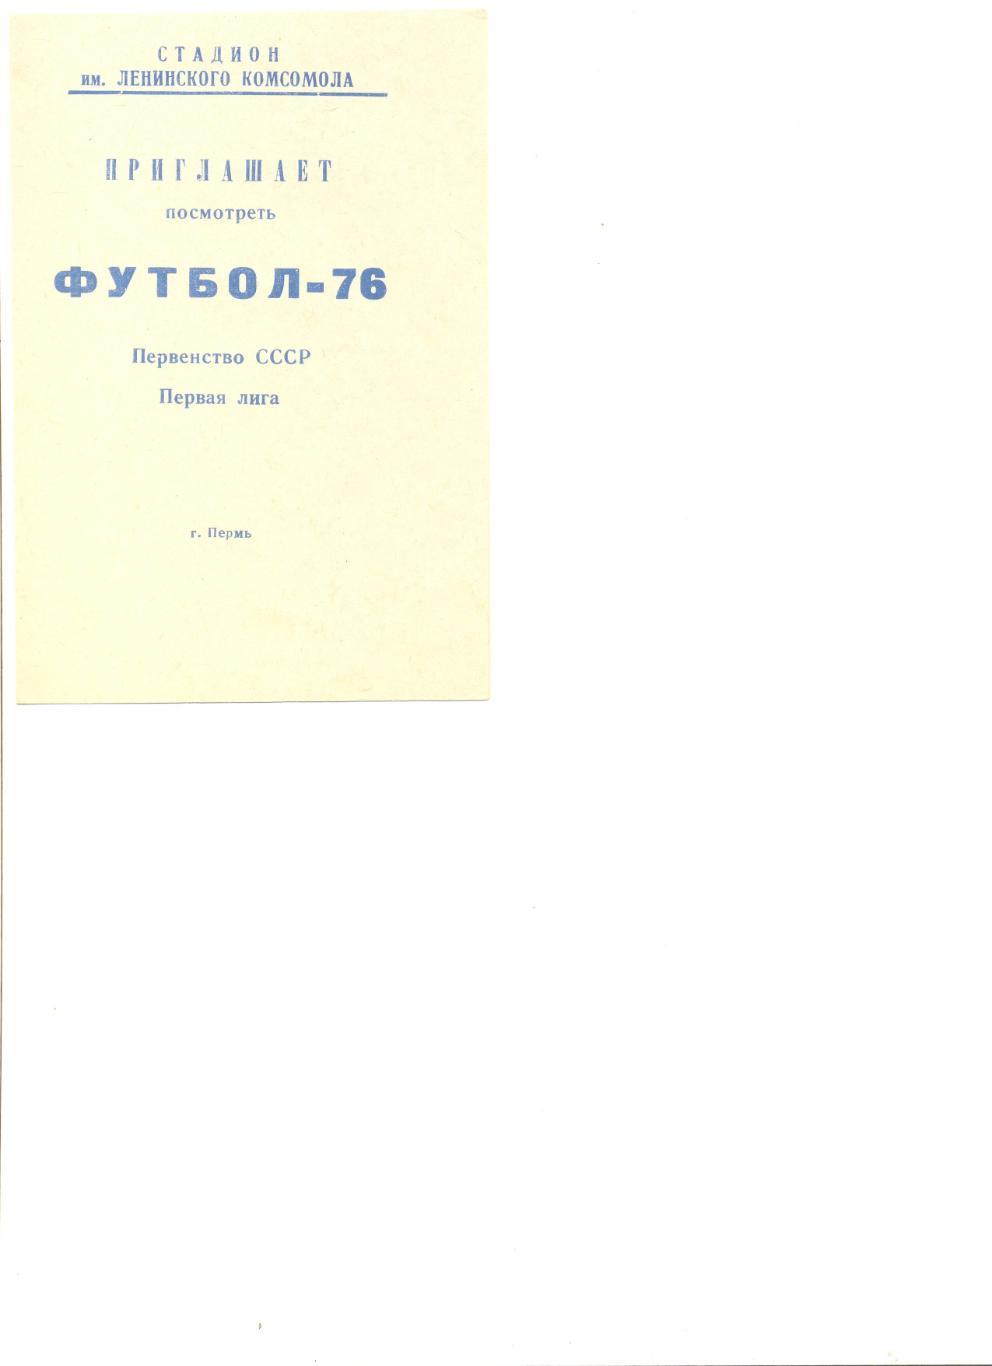 Пермь - 1976 г. Календарь игр.